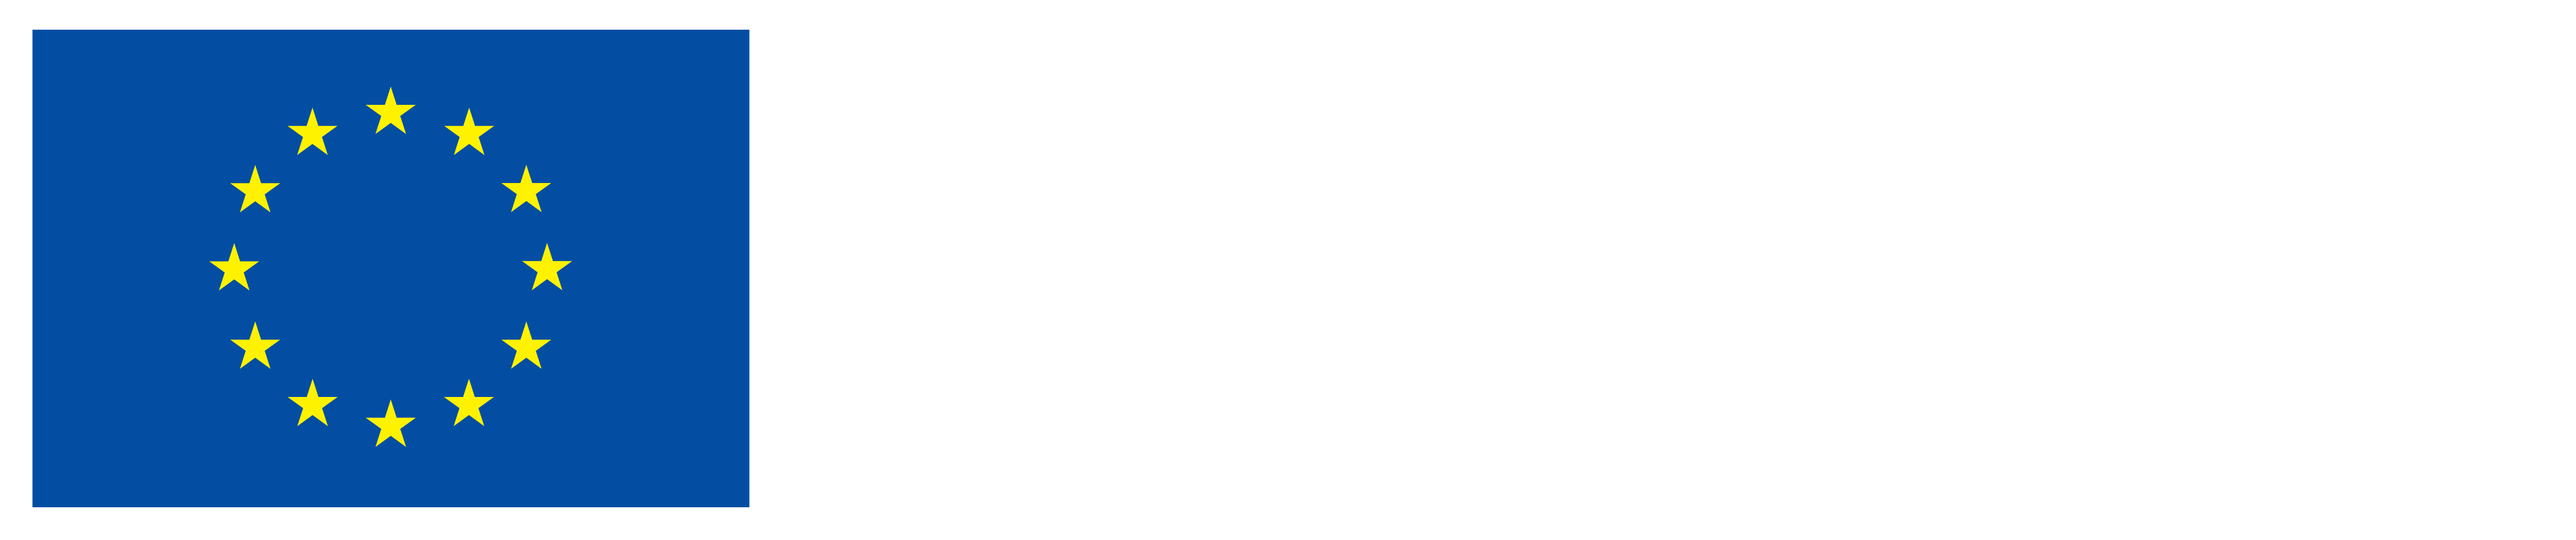 Европын холбооноос санхүүжүүлдэг